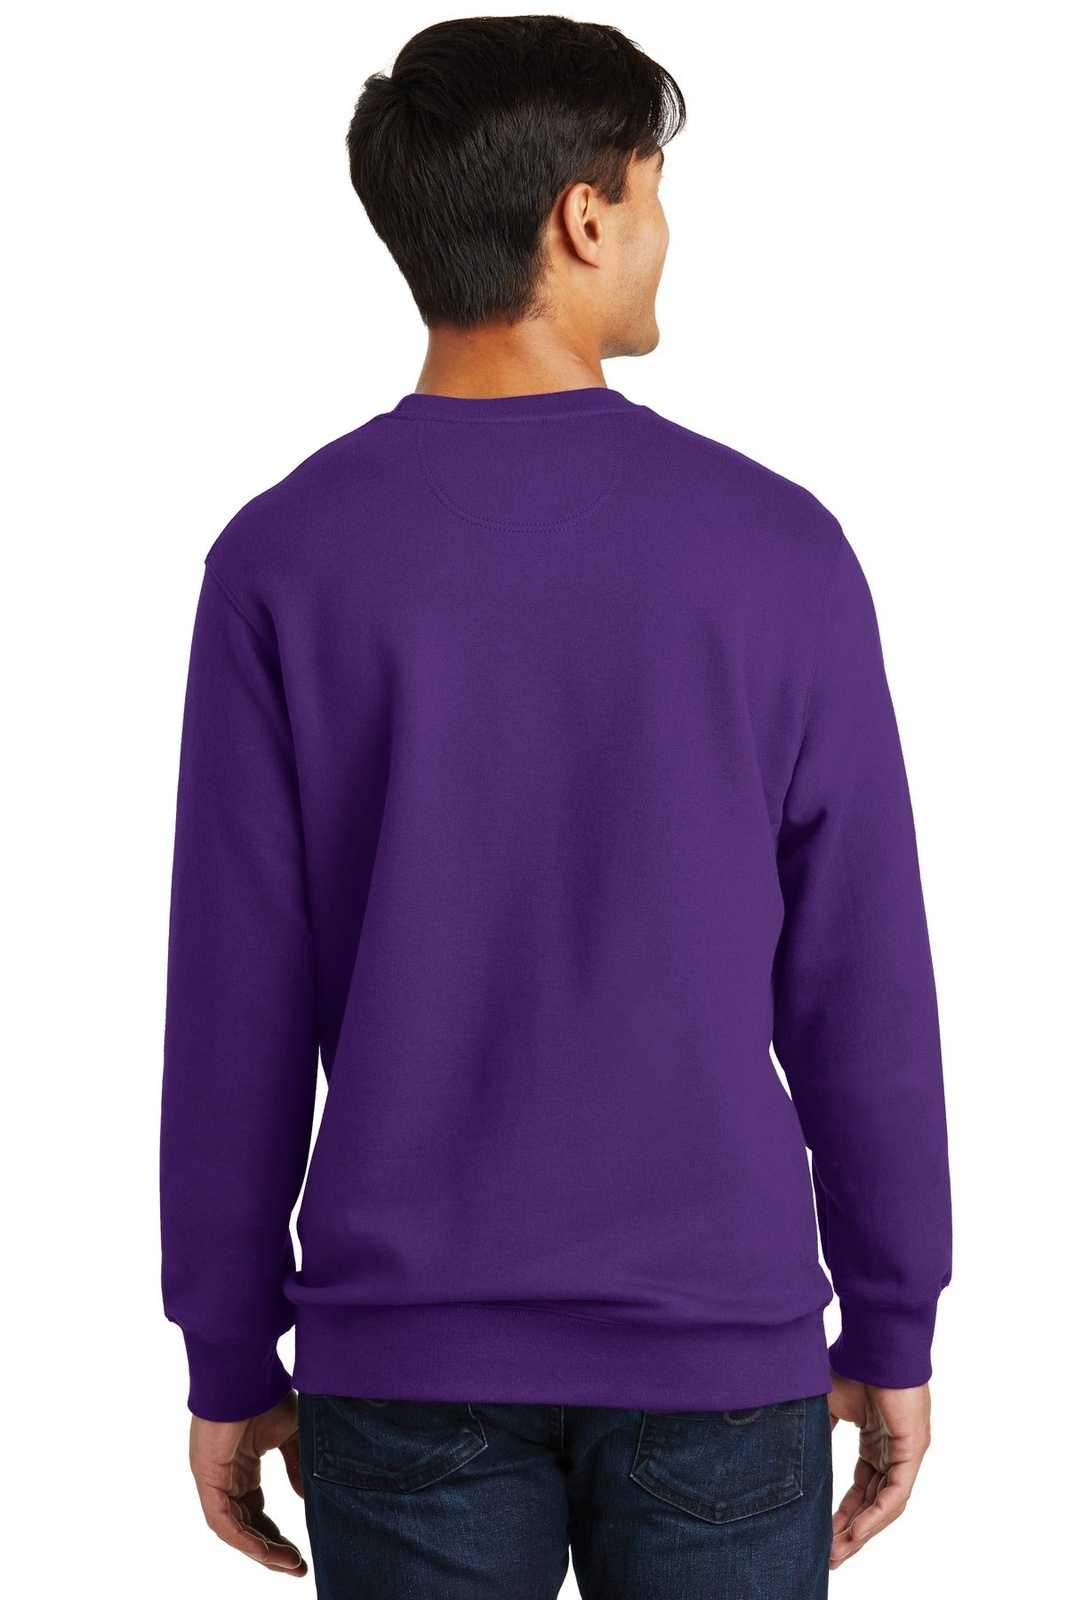 Port & Company PC850 Fan Favorite Fleece Crewneck Sweatshirt - Team Purple - HIT a Double - 1